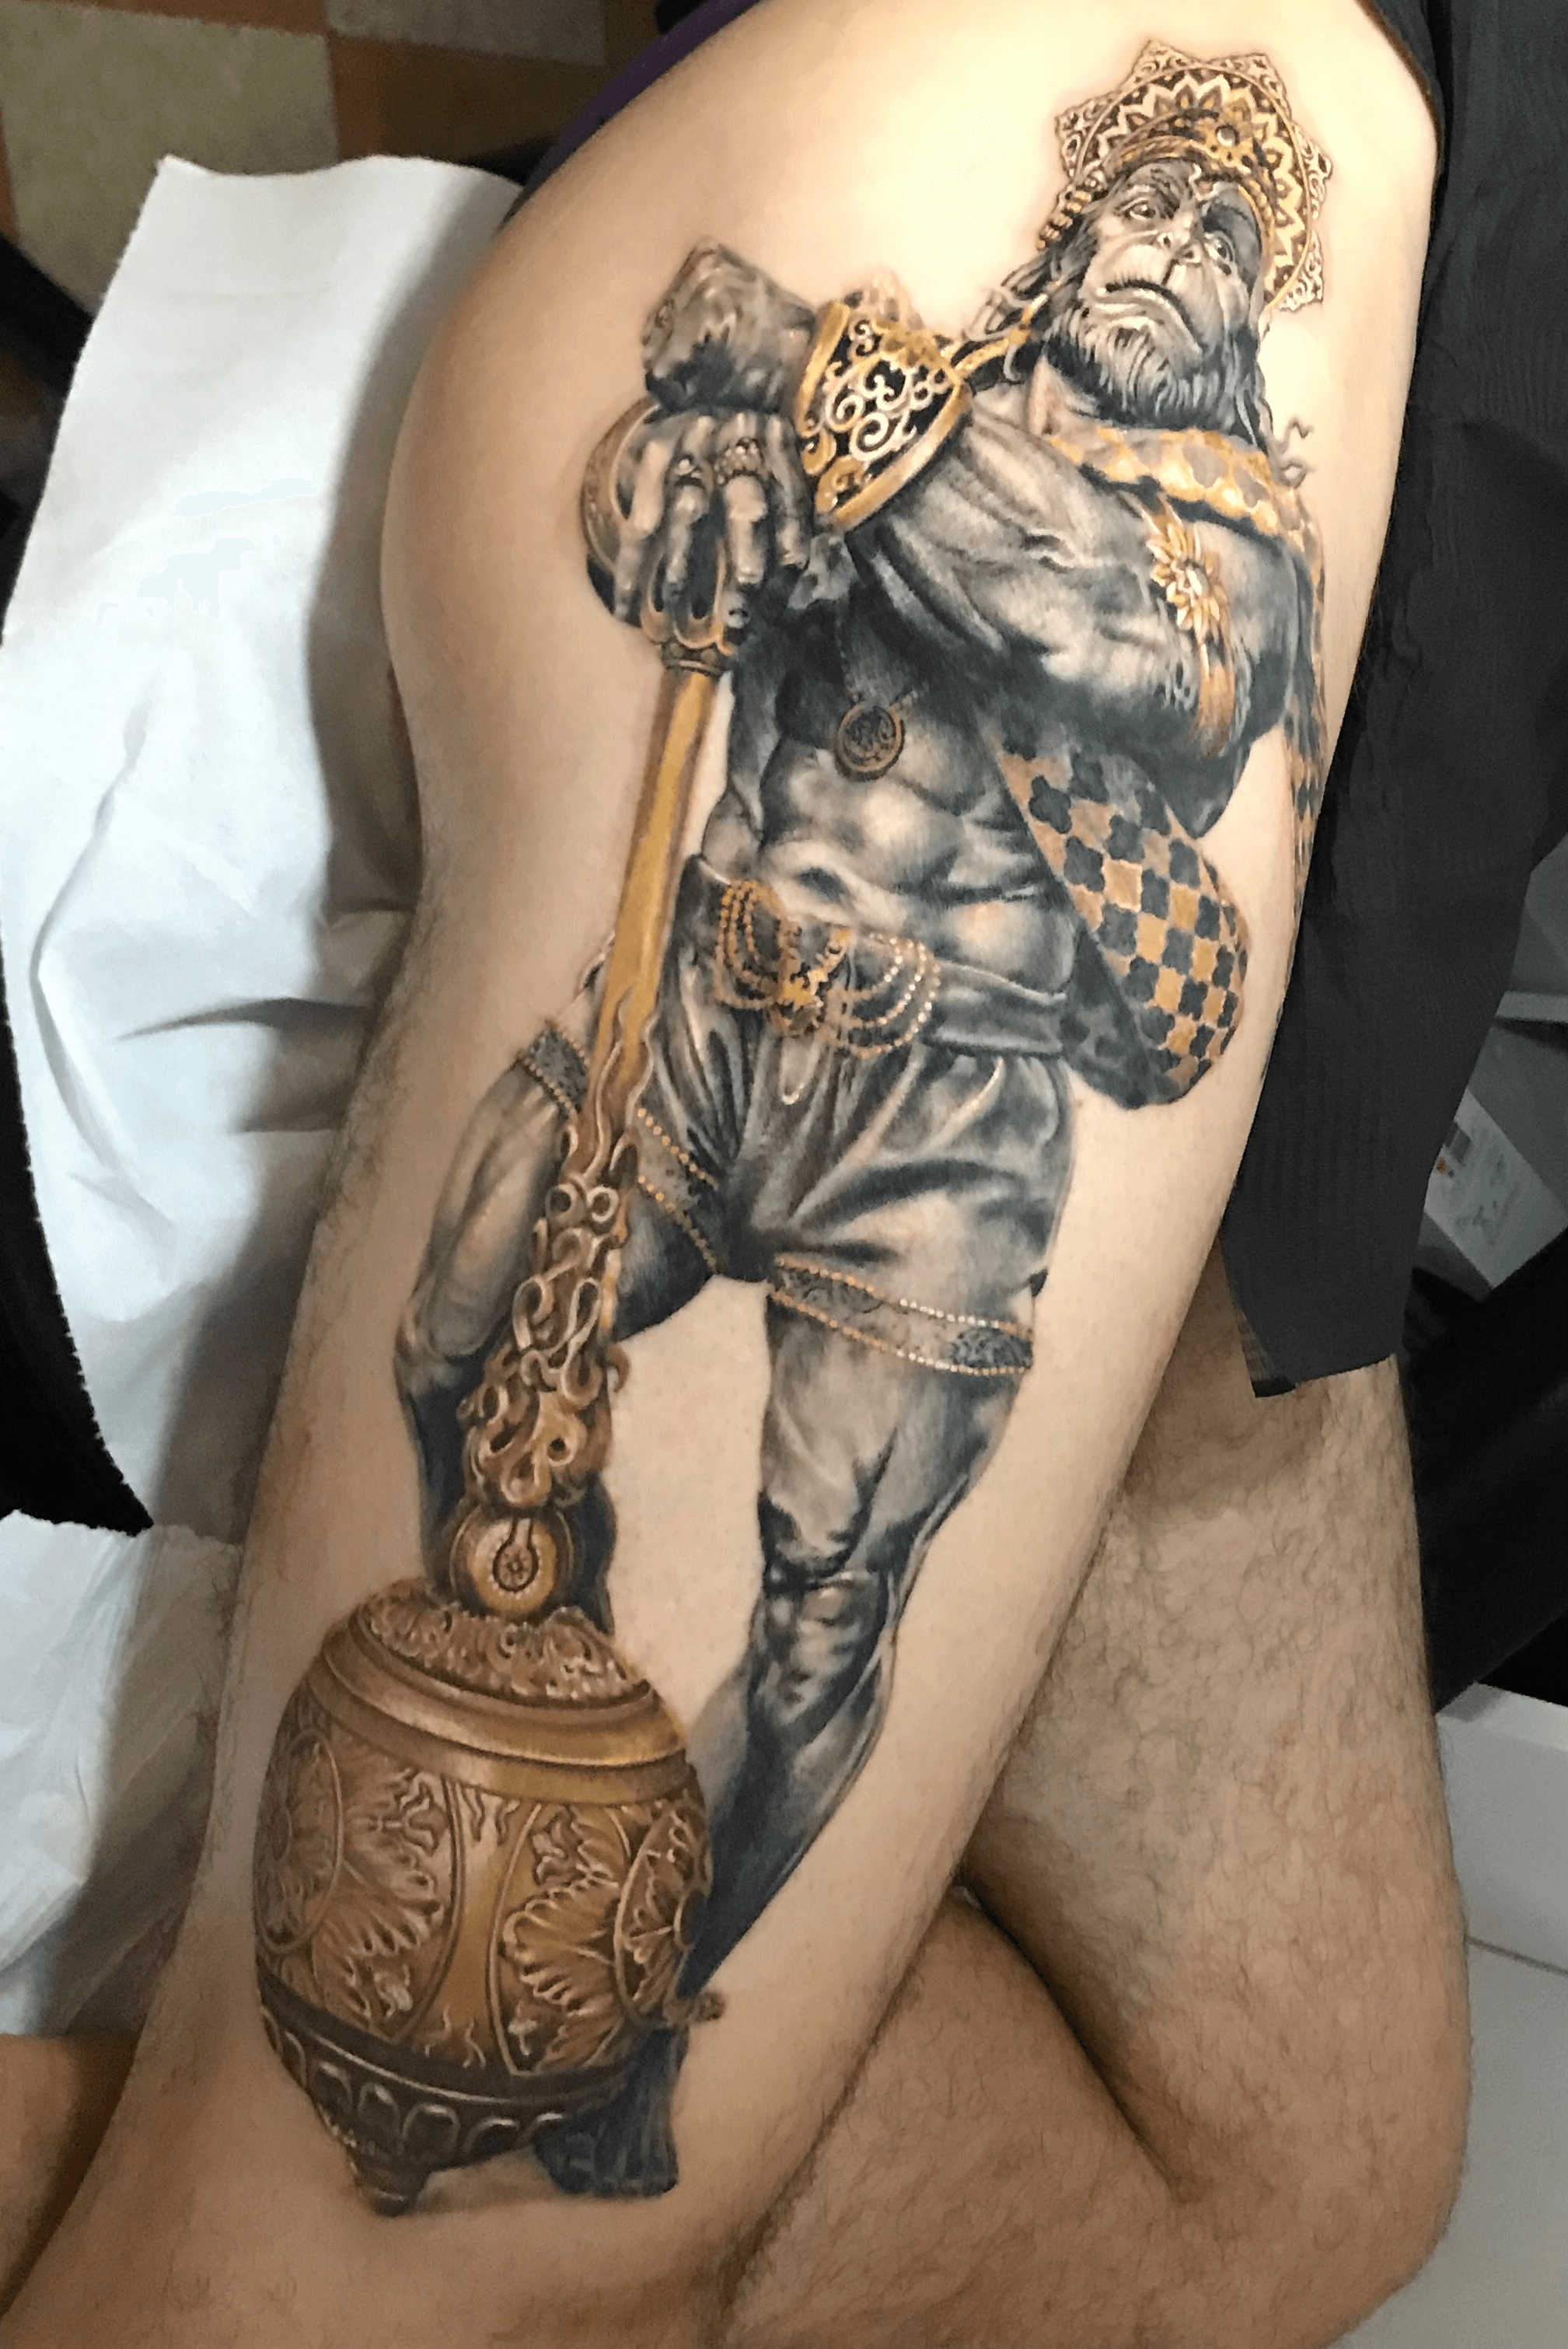 Warrior Tattoo Studio sumithdasan  Фотографије и видео записи на  услузи Instagram